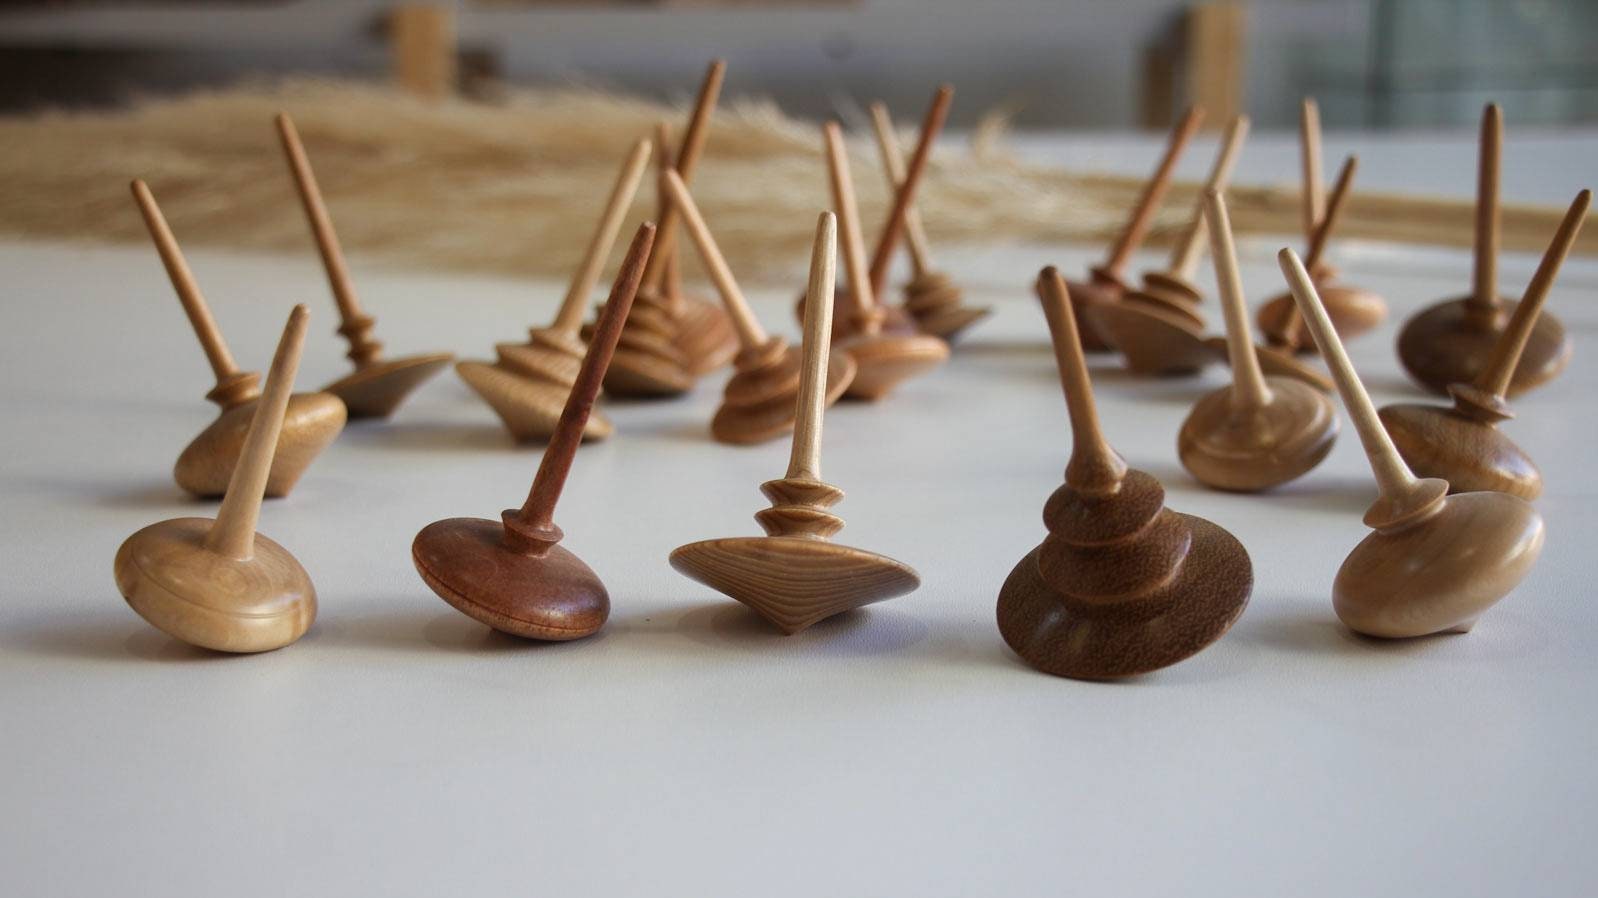 Handmade wooden spinning tops.